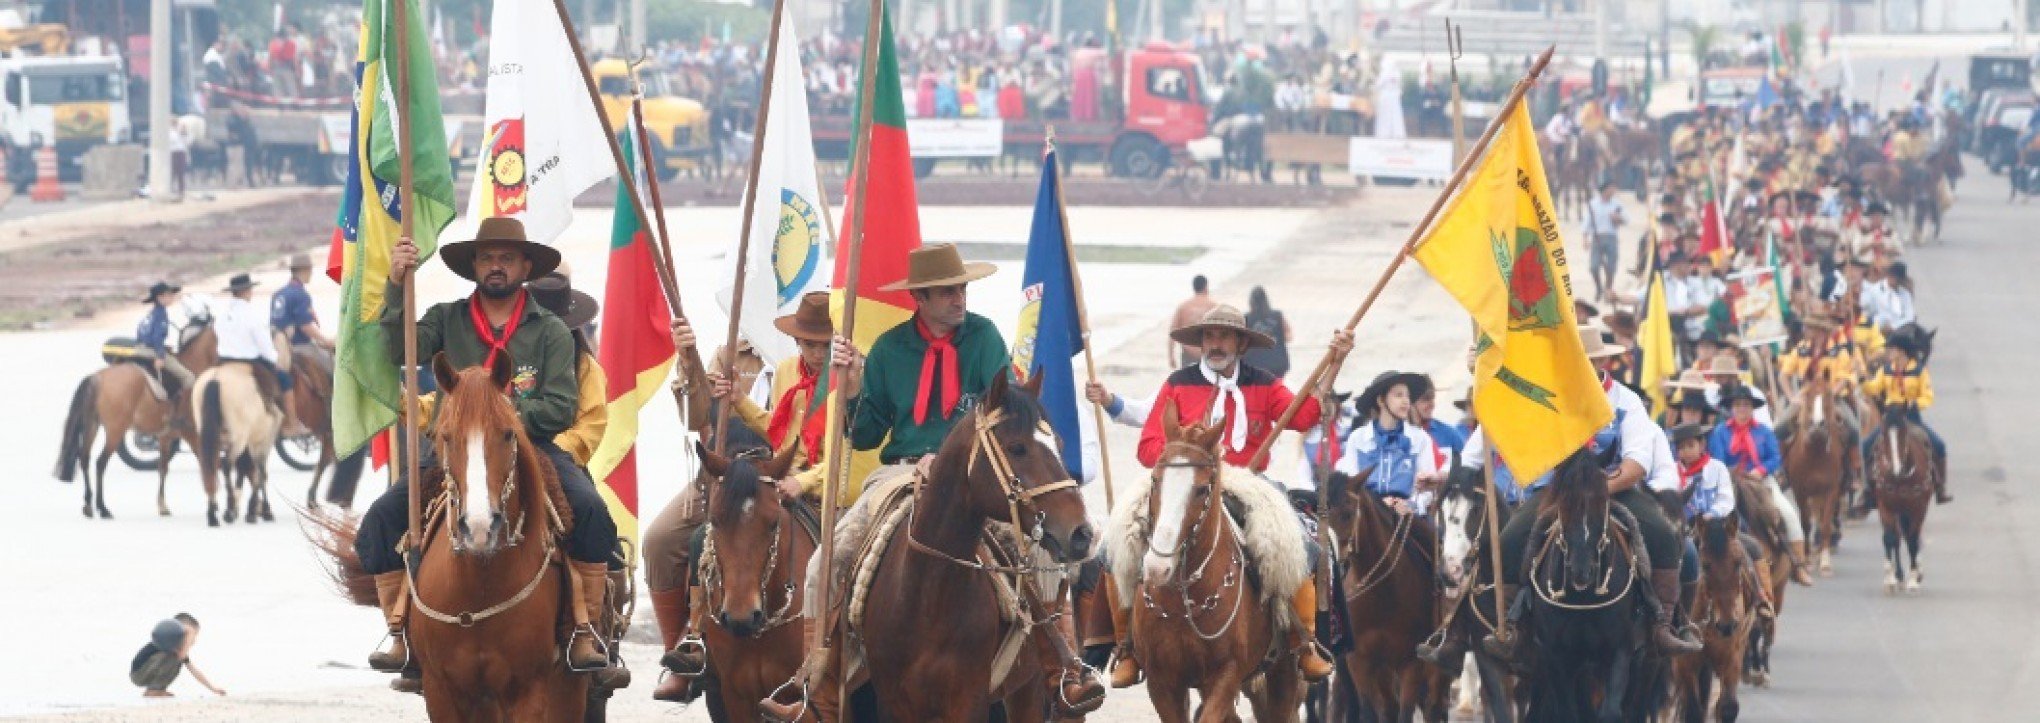 Centenas de cavalarianos se reuniram em Canoas no desfile que celebrou a memória gaúcha